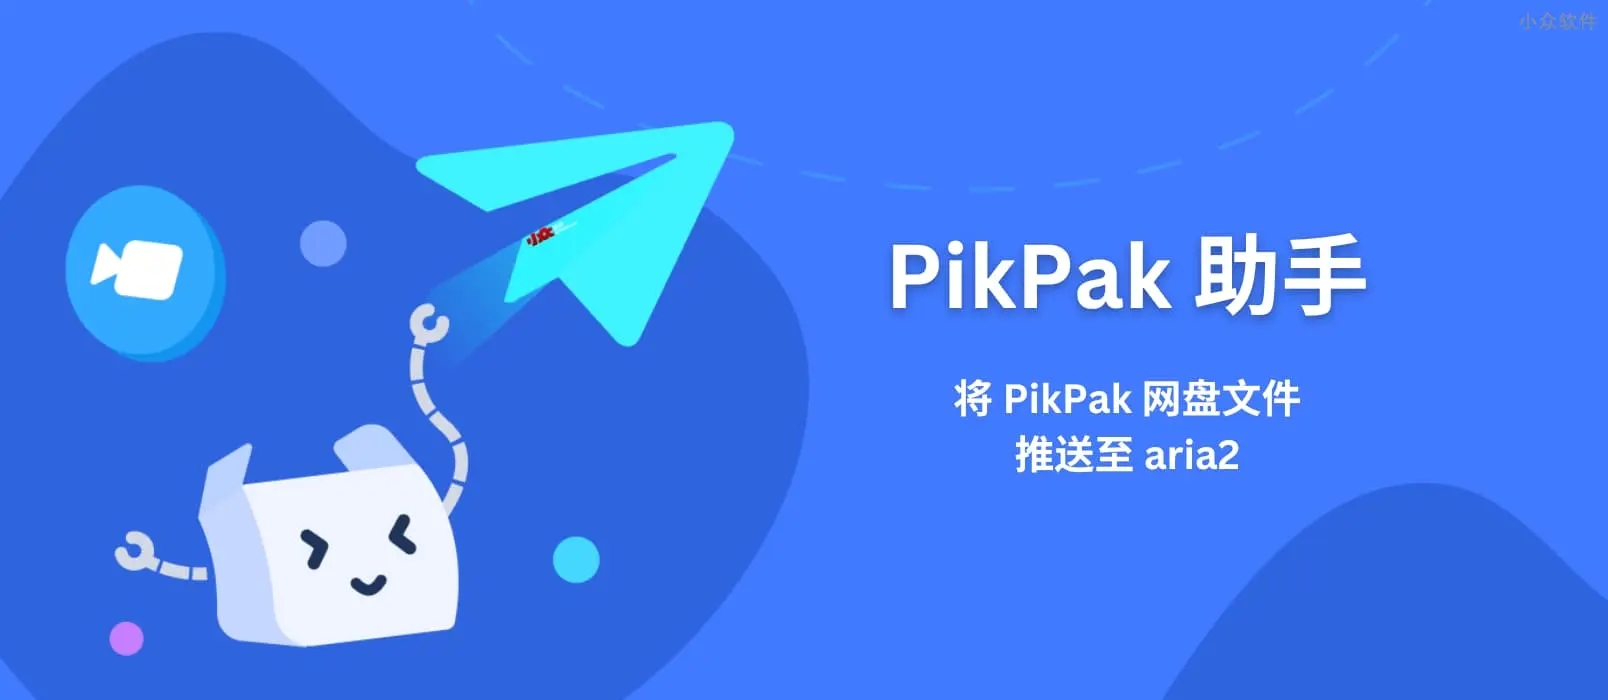 PikPak网盘最新版1